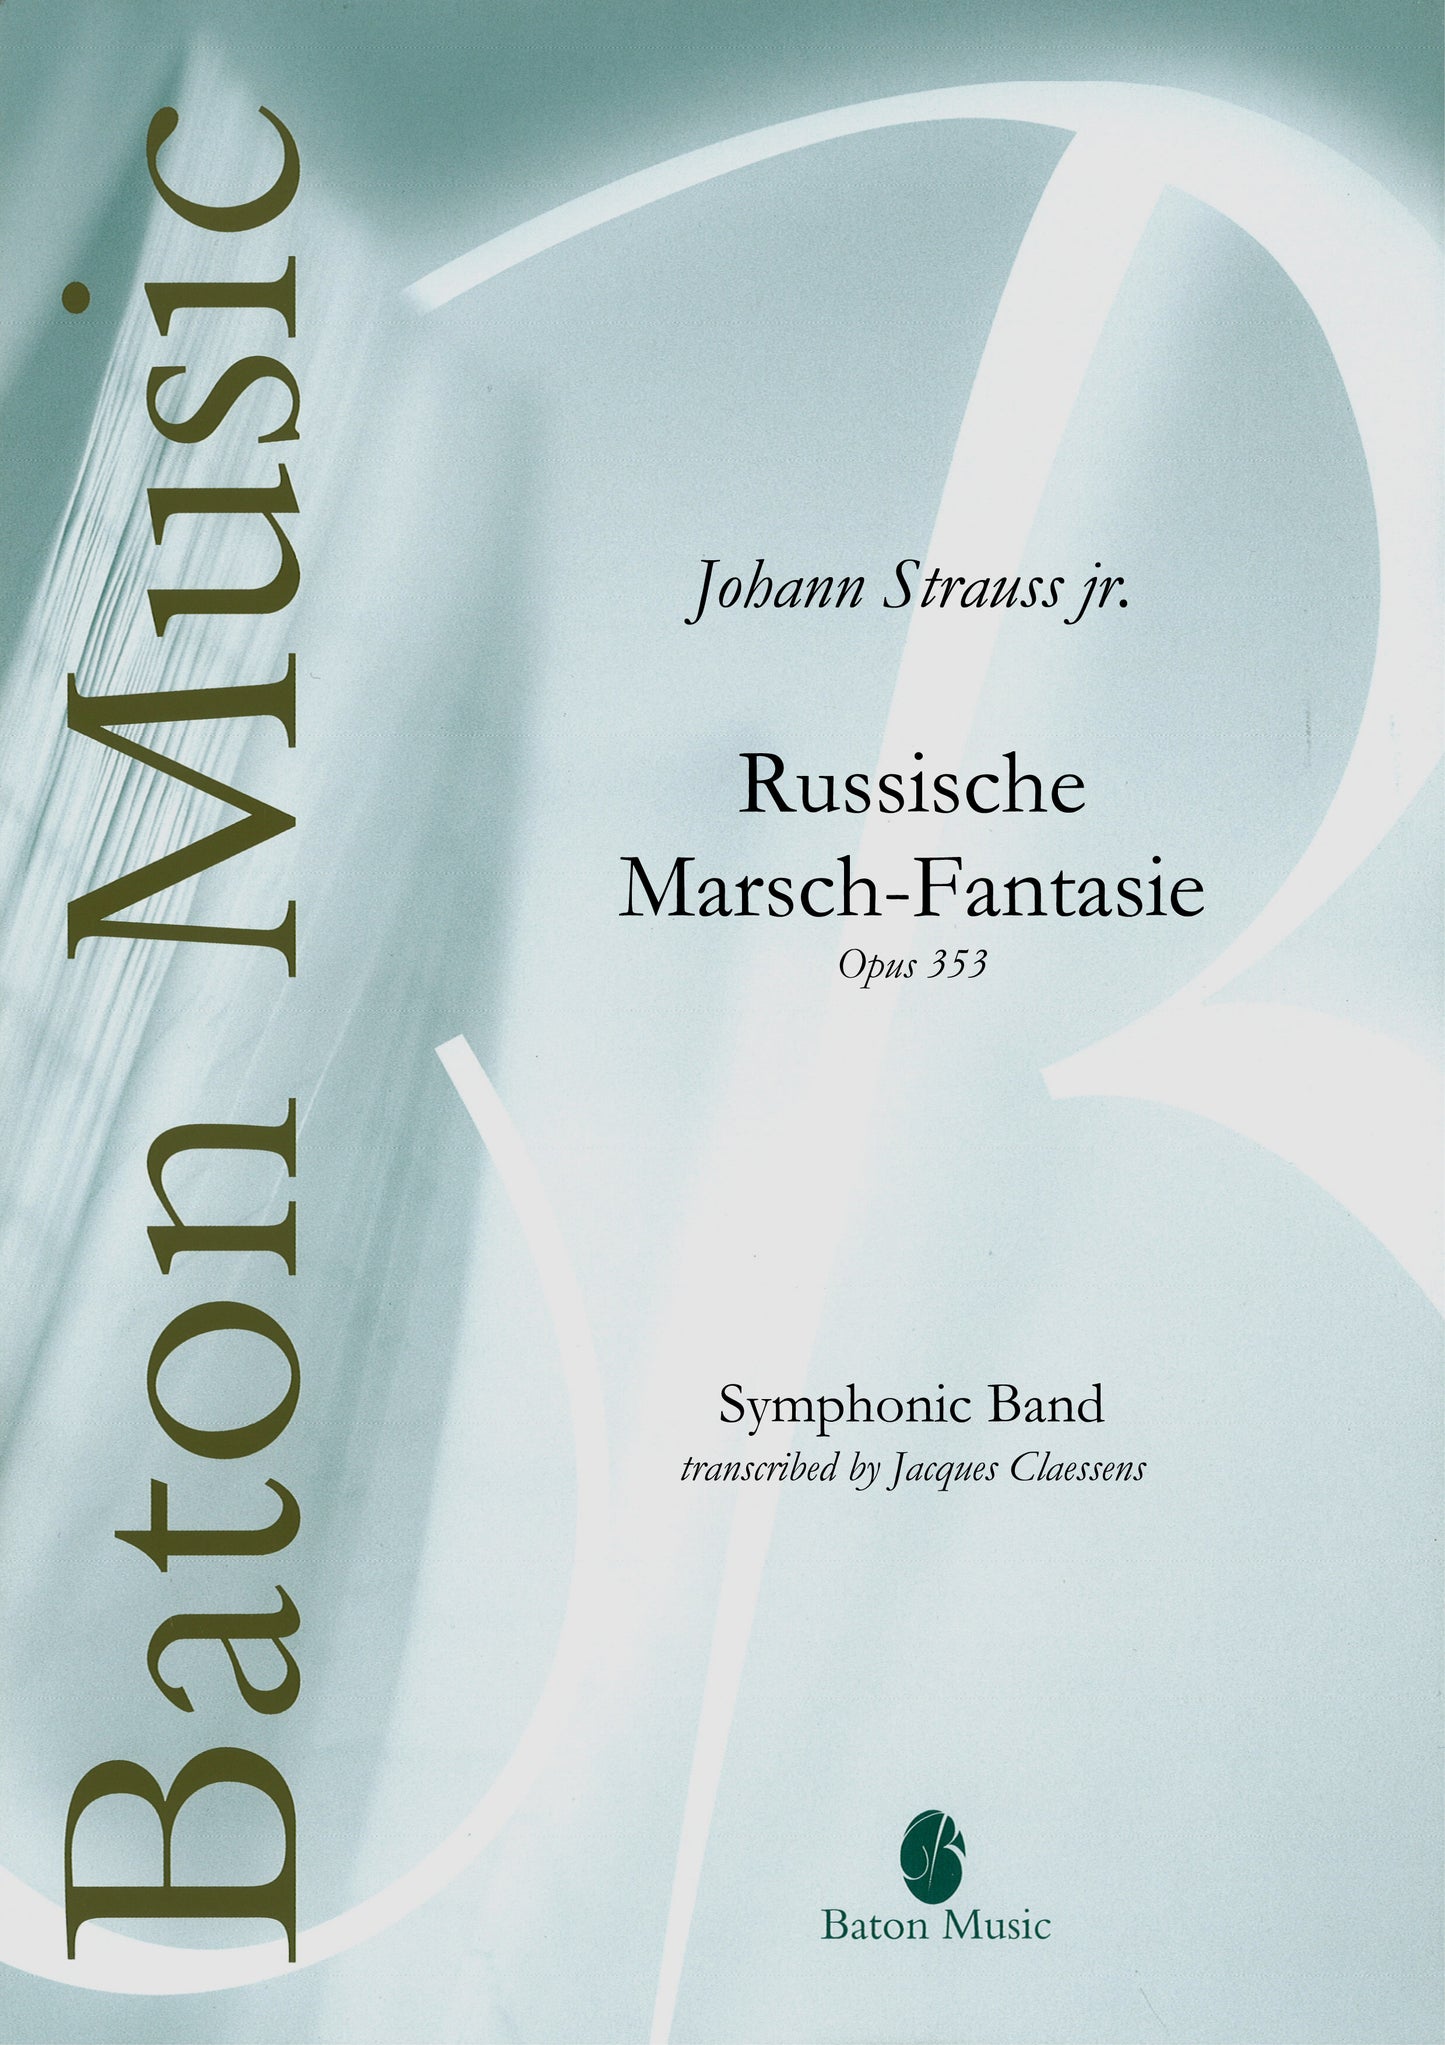 Russische Marsch-Fantasie - J. Strauss